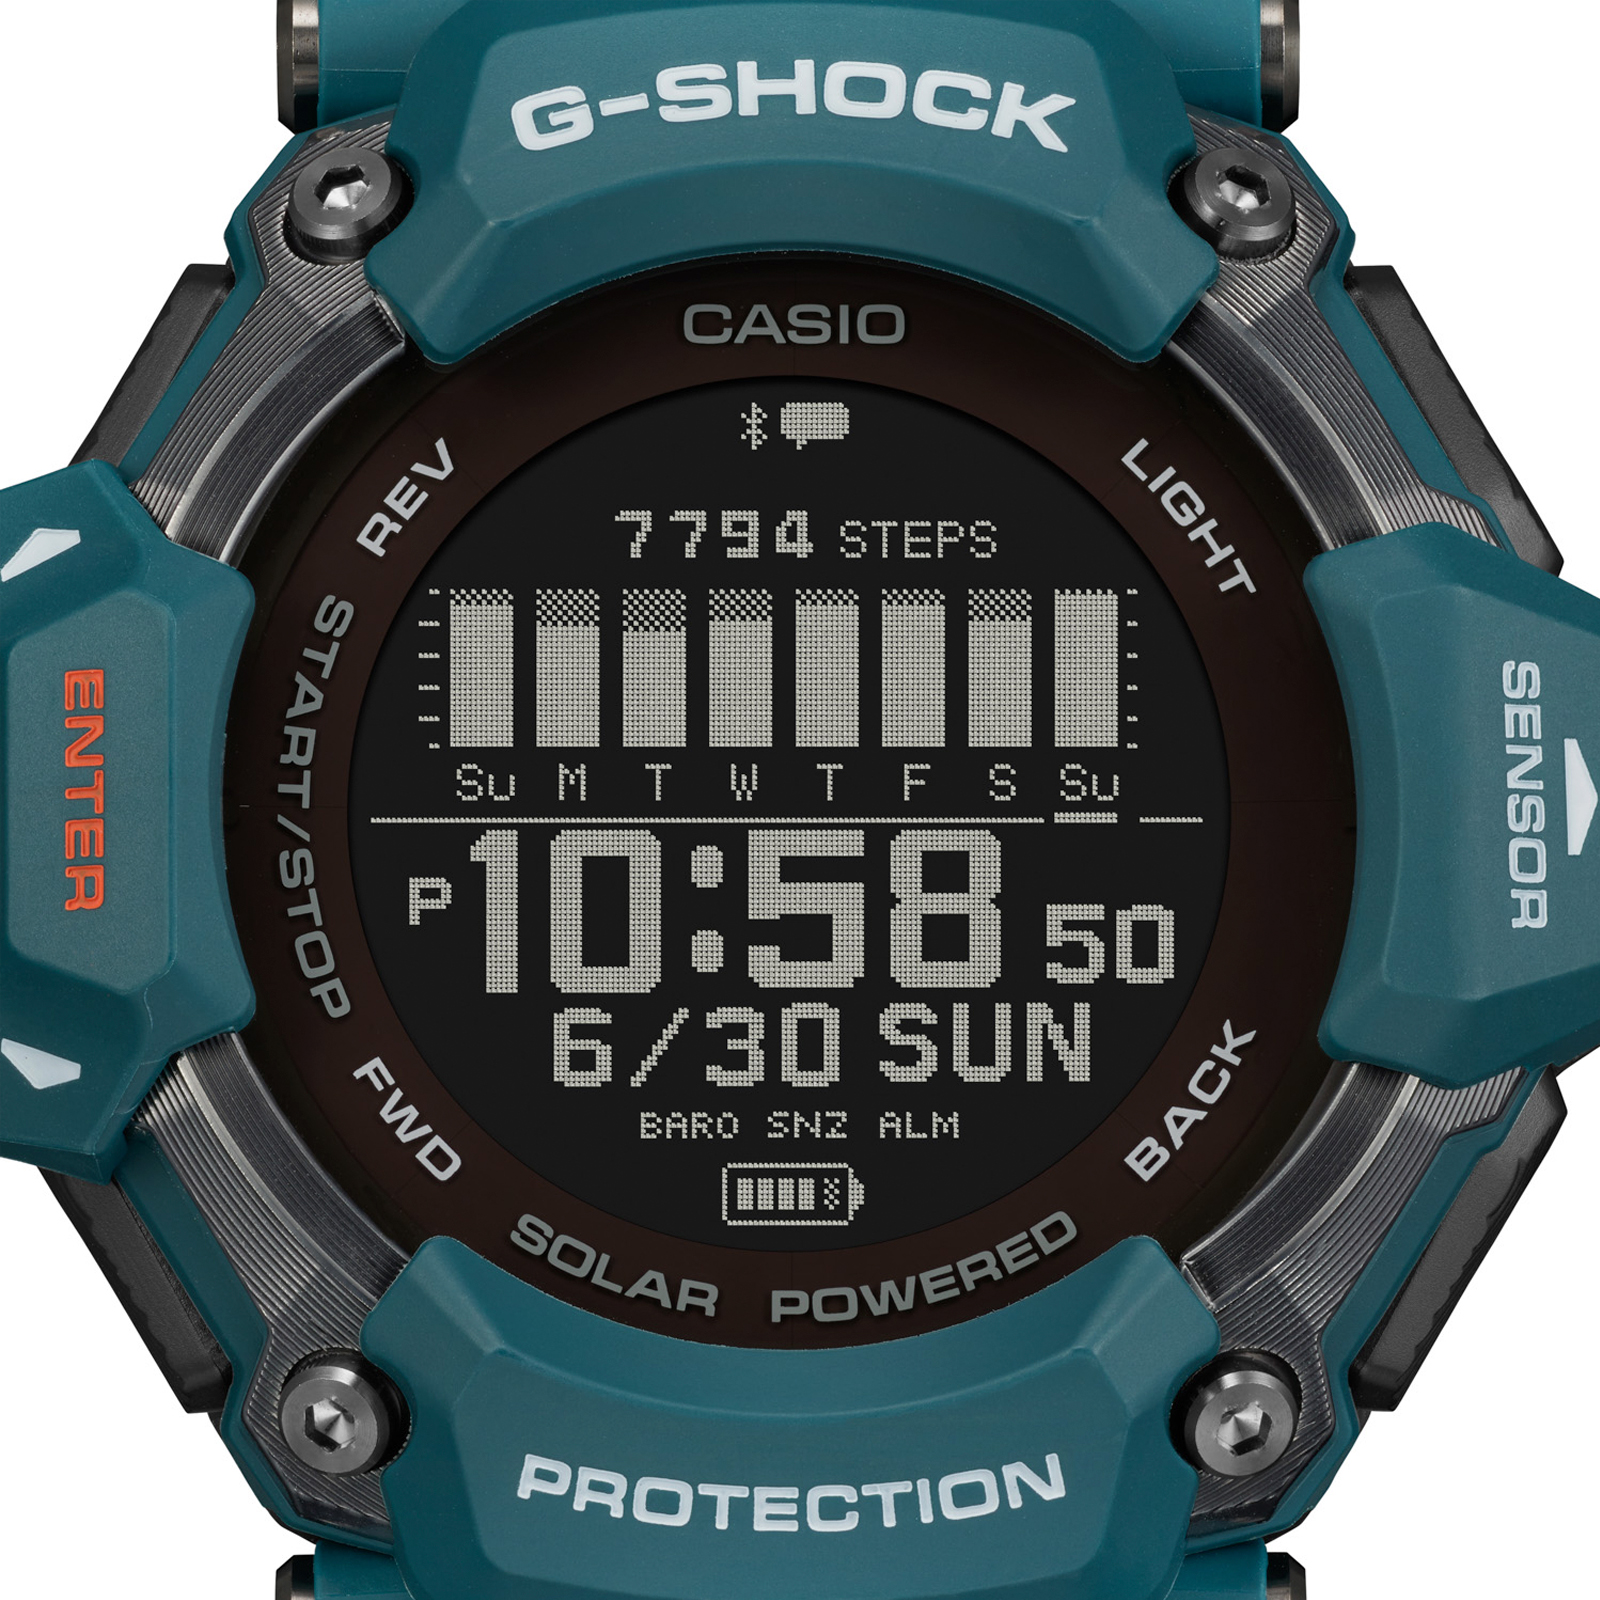 Reloj G-SHOCK GBD-H2000-2D Resina Hombre Azul Verdoso